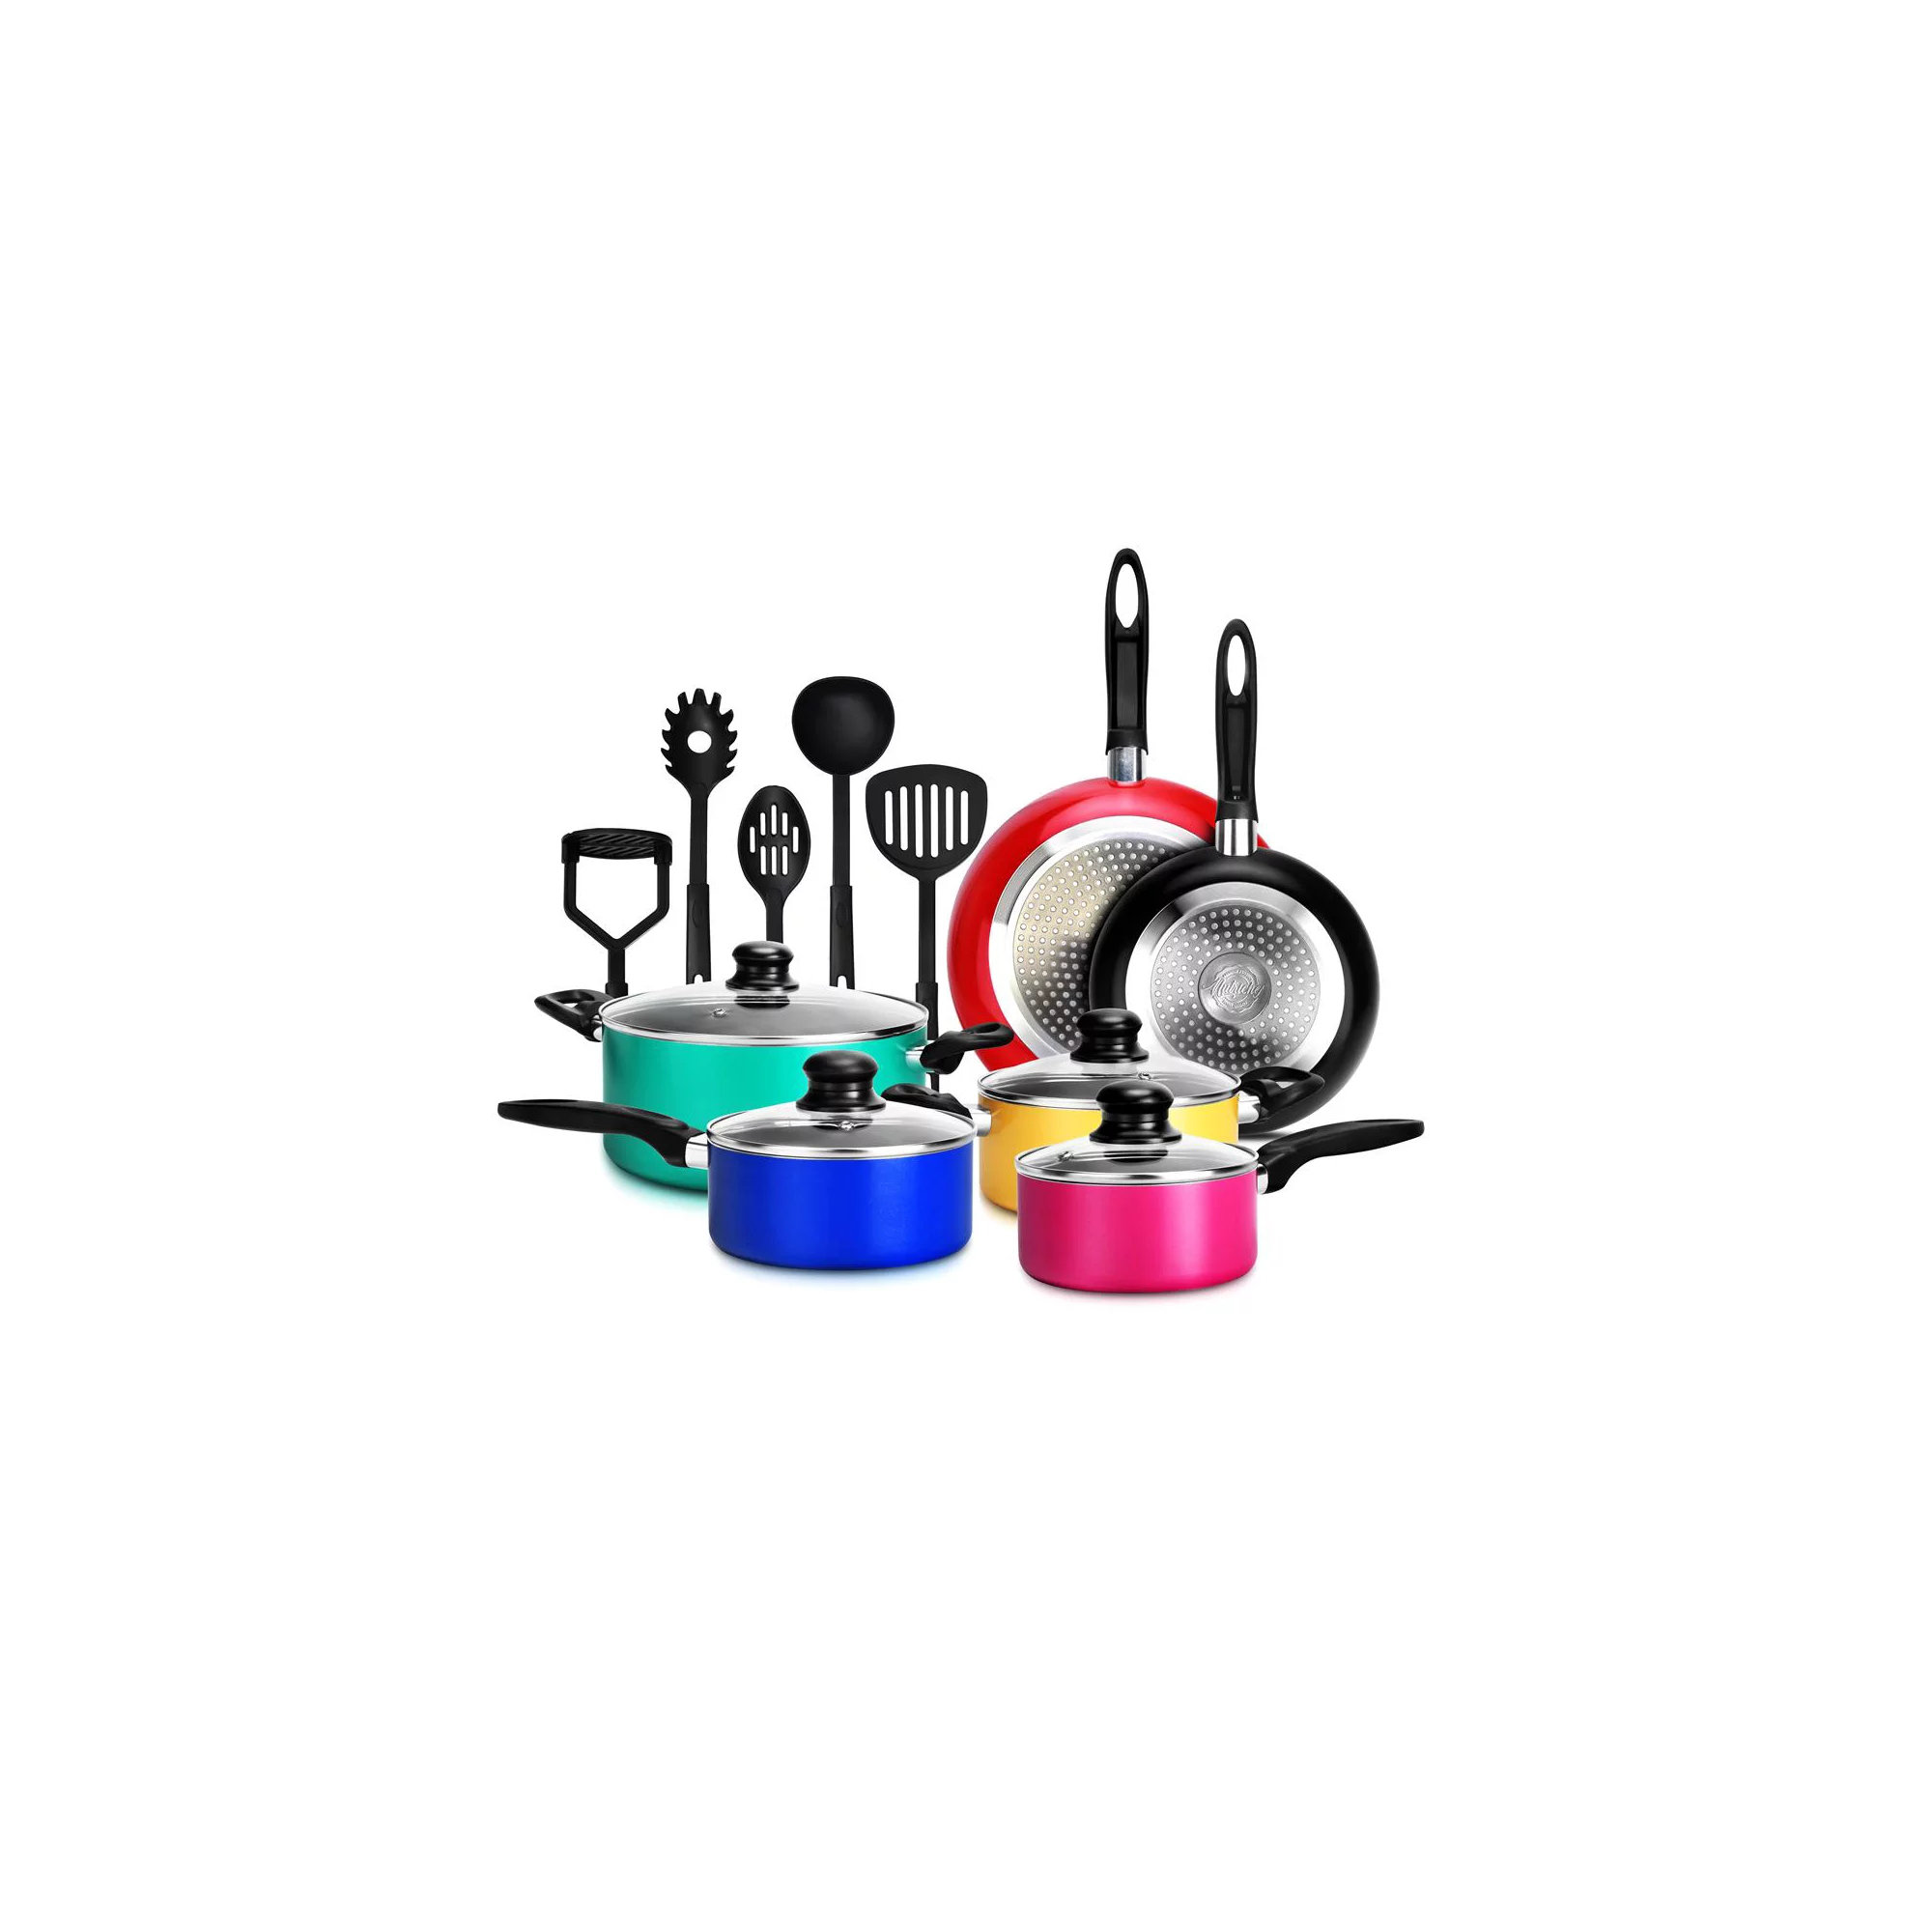 https://assets.wfcdn.com/im/20501788/compr-r85/2348/234858480/15-piece-non-stick-aluminum-cookware-set.jpg